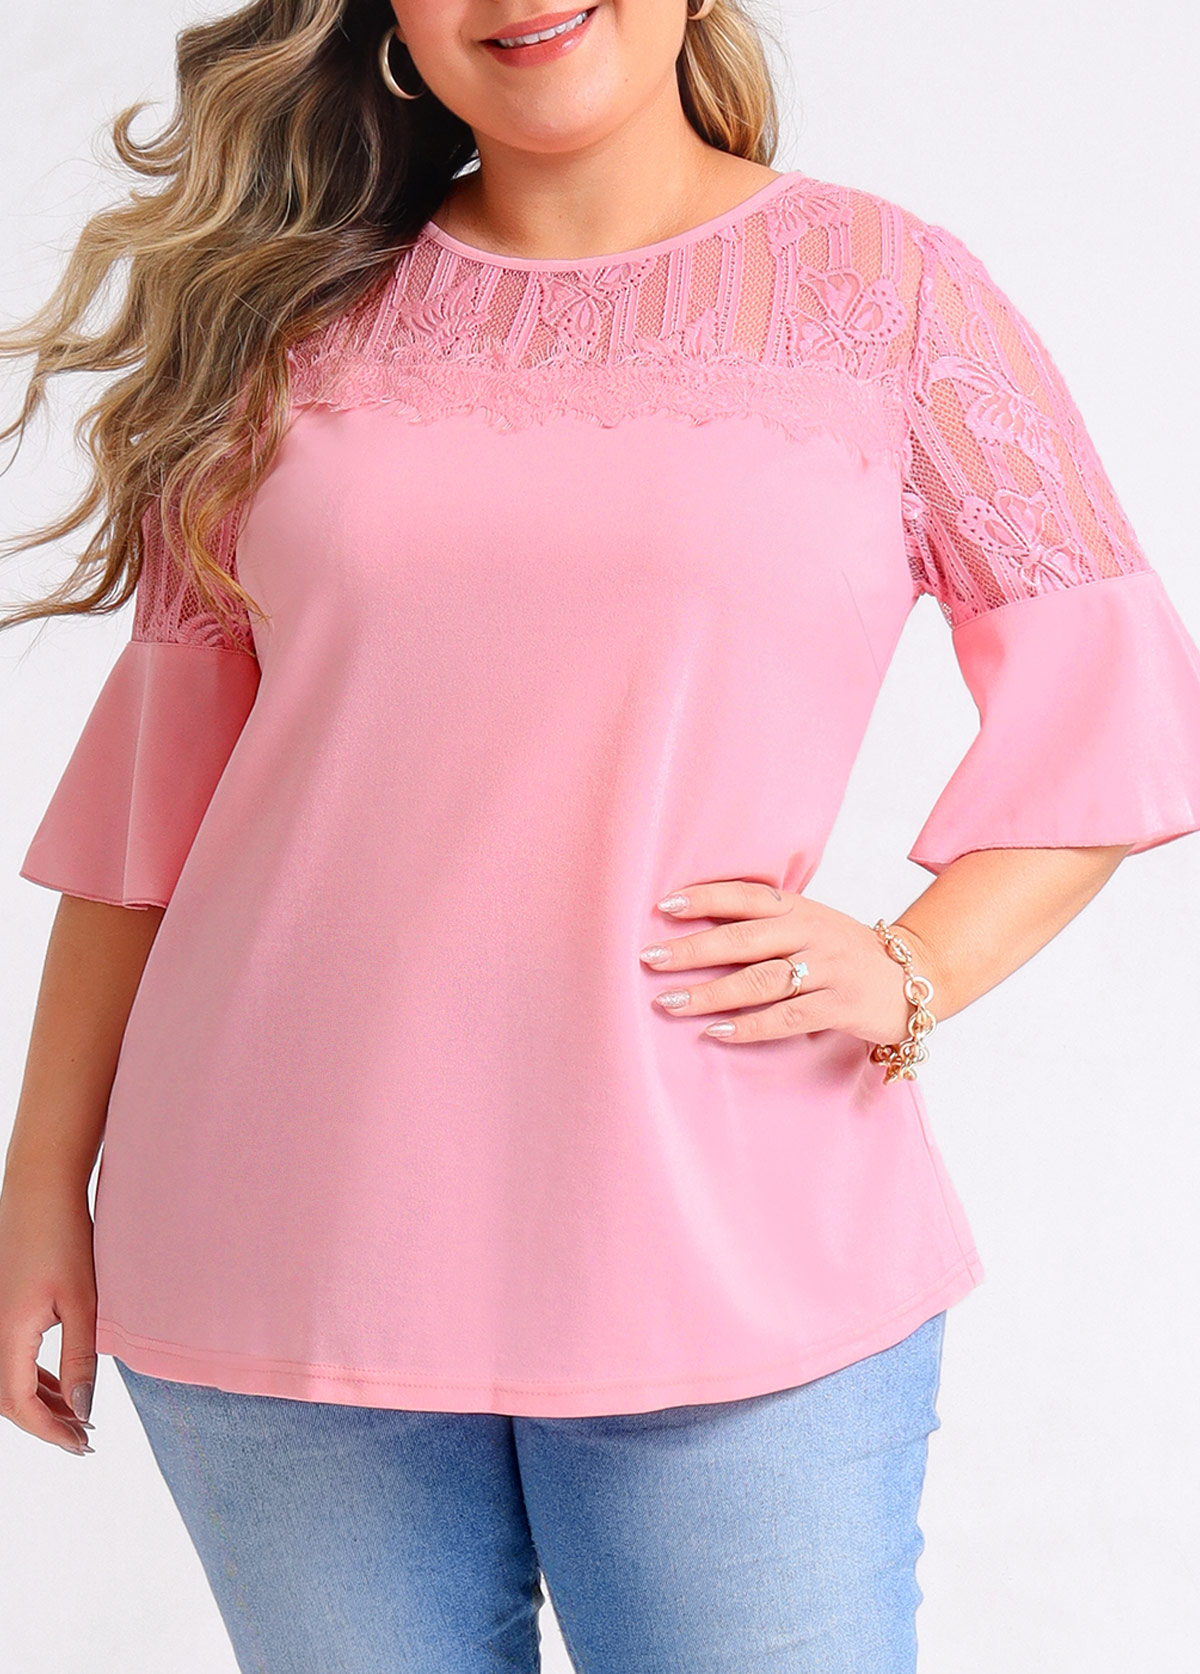 Lace Stitching Plus Size Light Pink T Shirt